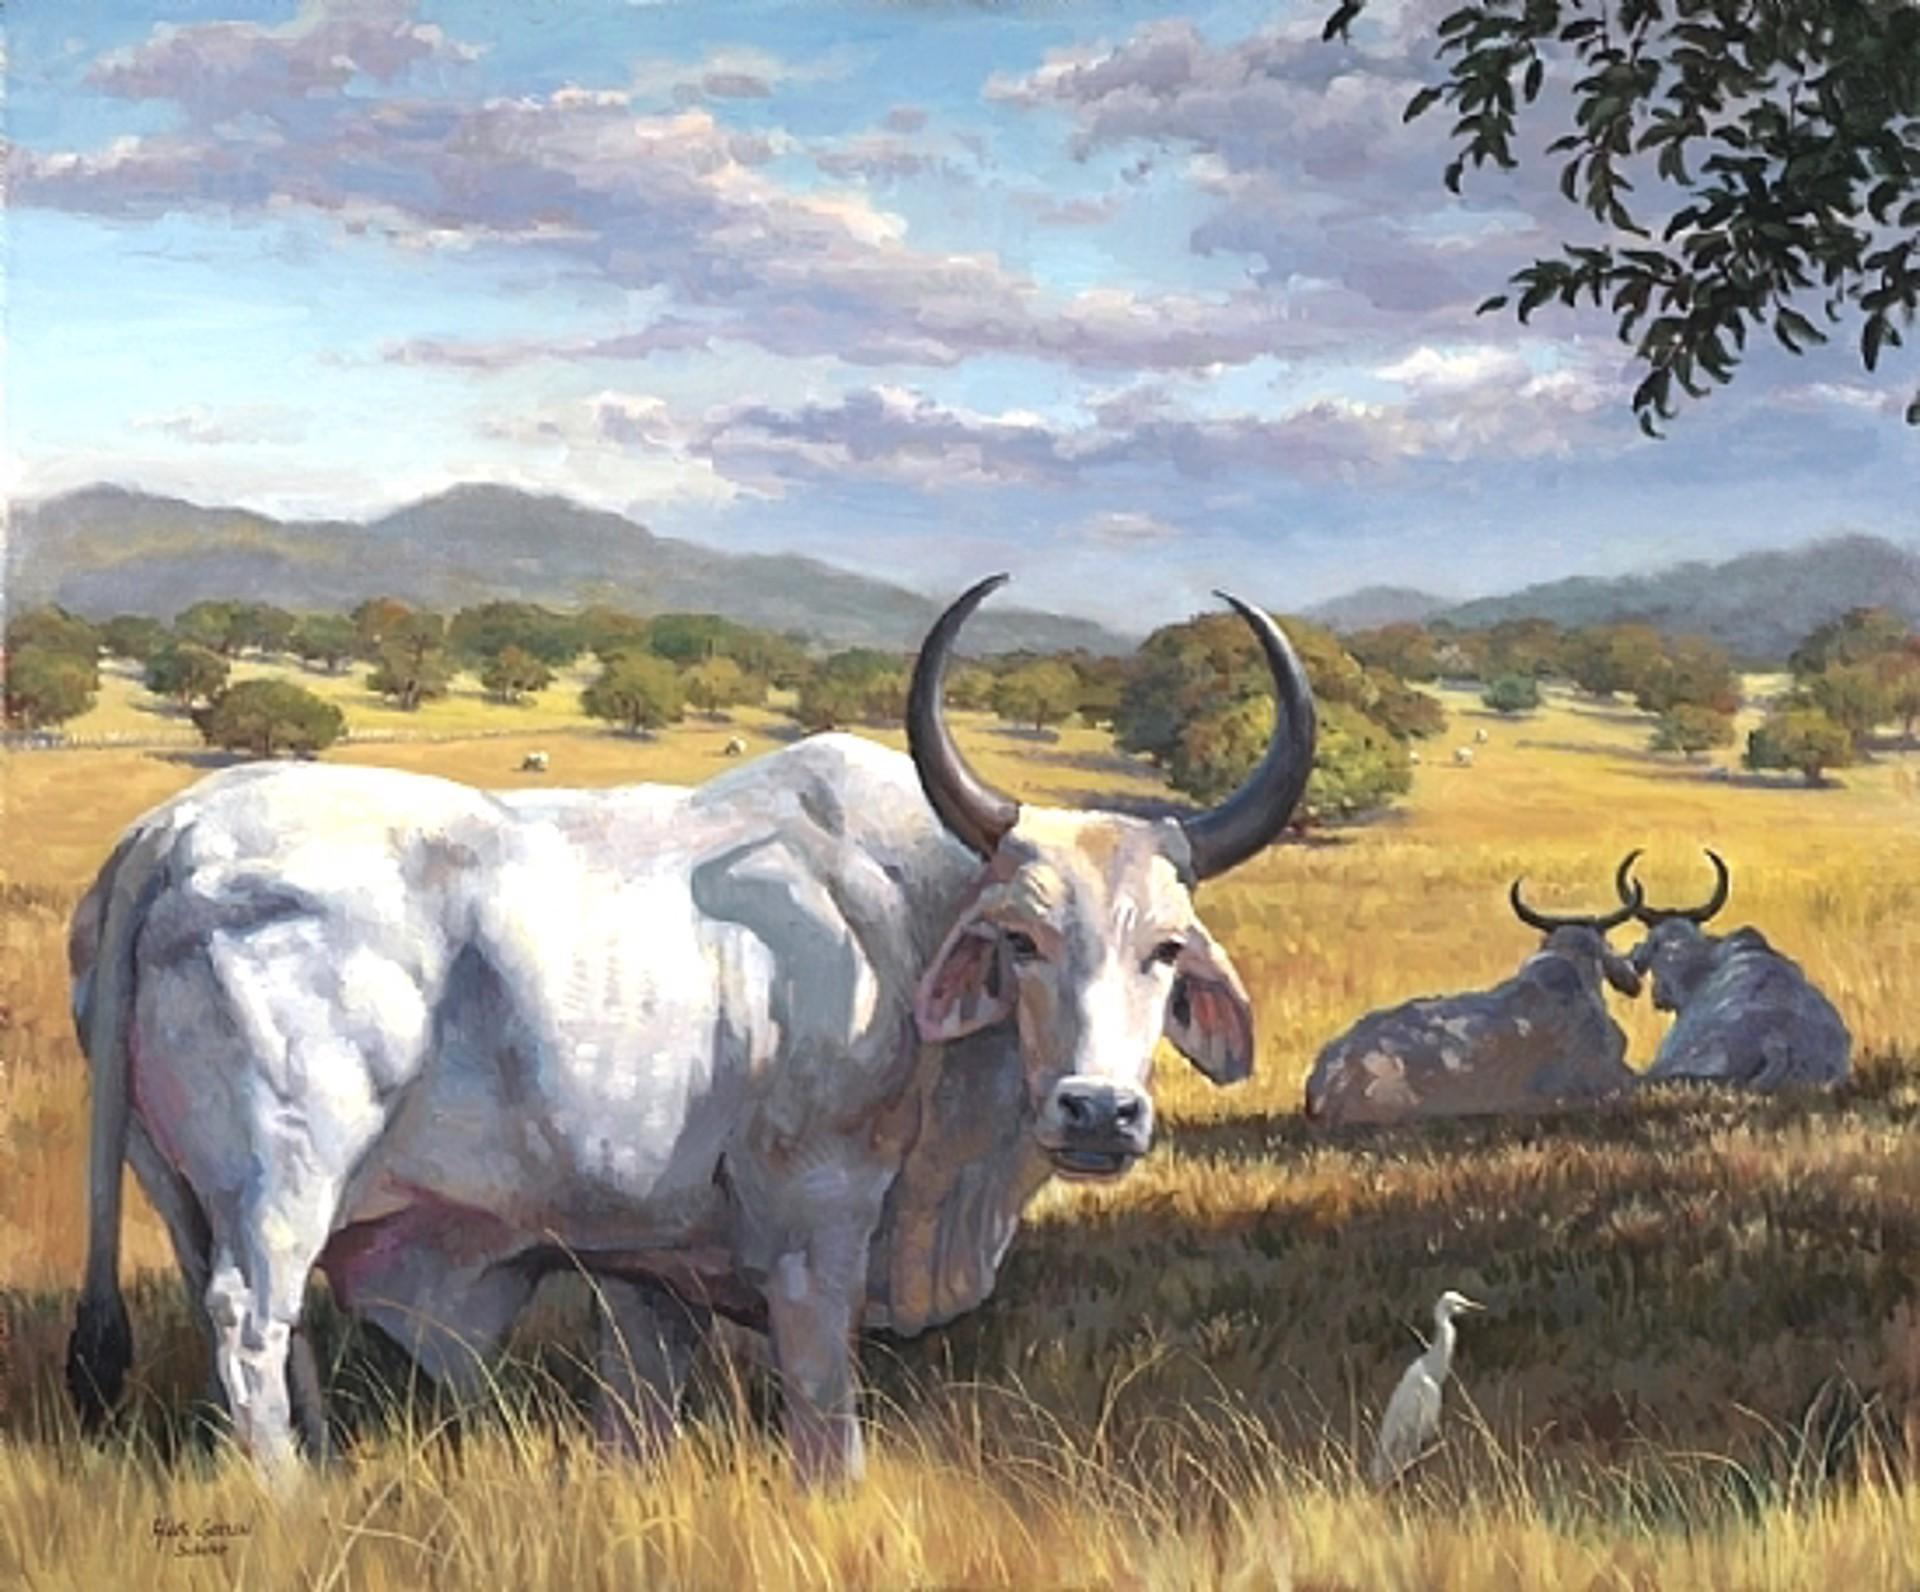 "Brahmins of Guanacaste", eine Öllandschaft mit Rindern im Nordwesten Costa Ricas, wurde von Hans Guerin gemalt, einem Nachkommen des Gründers der angesehenen Schuler School of Fine Arts, die Studenten in den Methoden und Techniken der alten